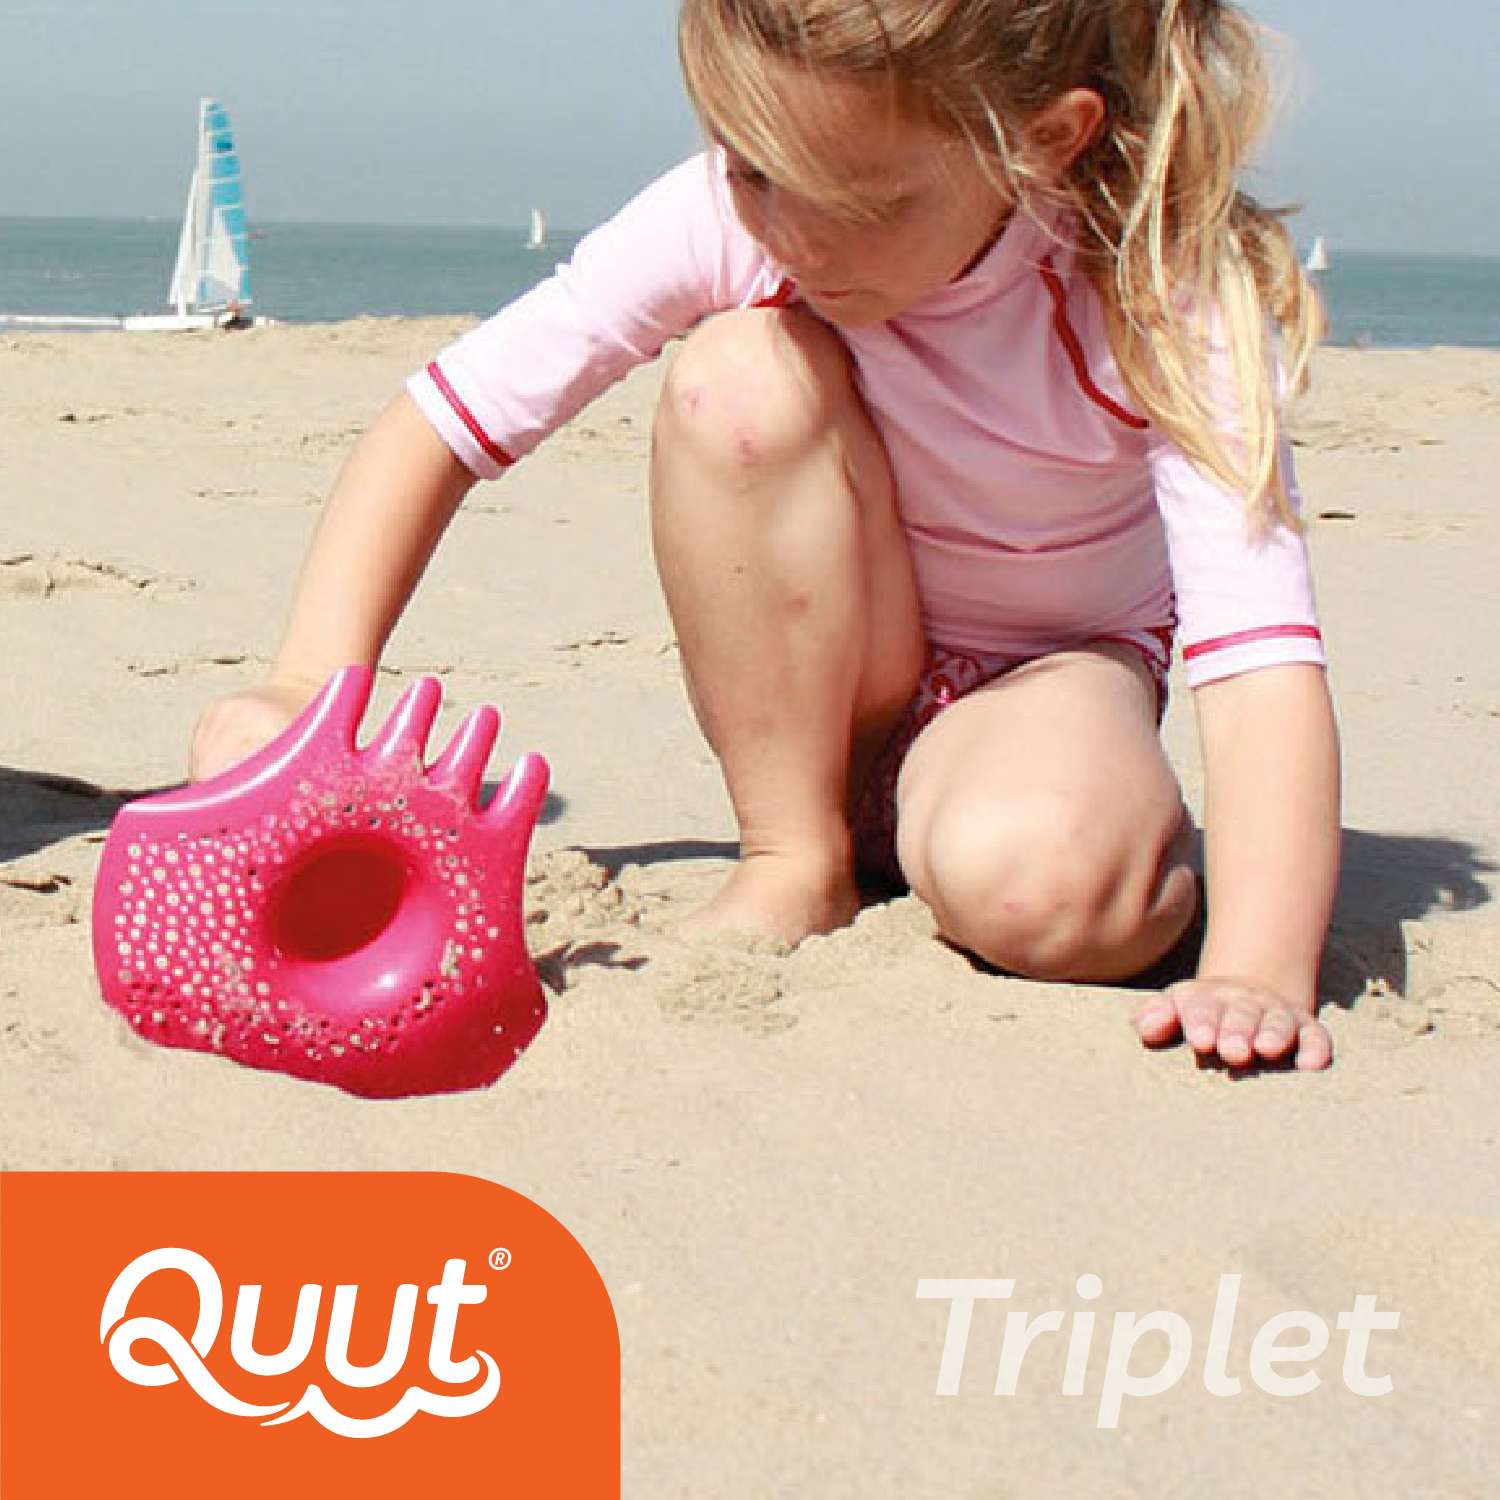 Игрушка для песка и снега QUUT многофункциональная Triplet Очень оранжевый - фото 5